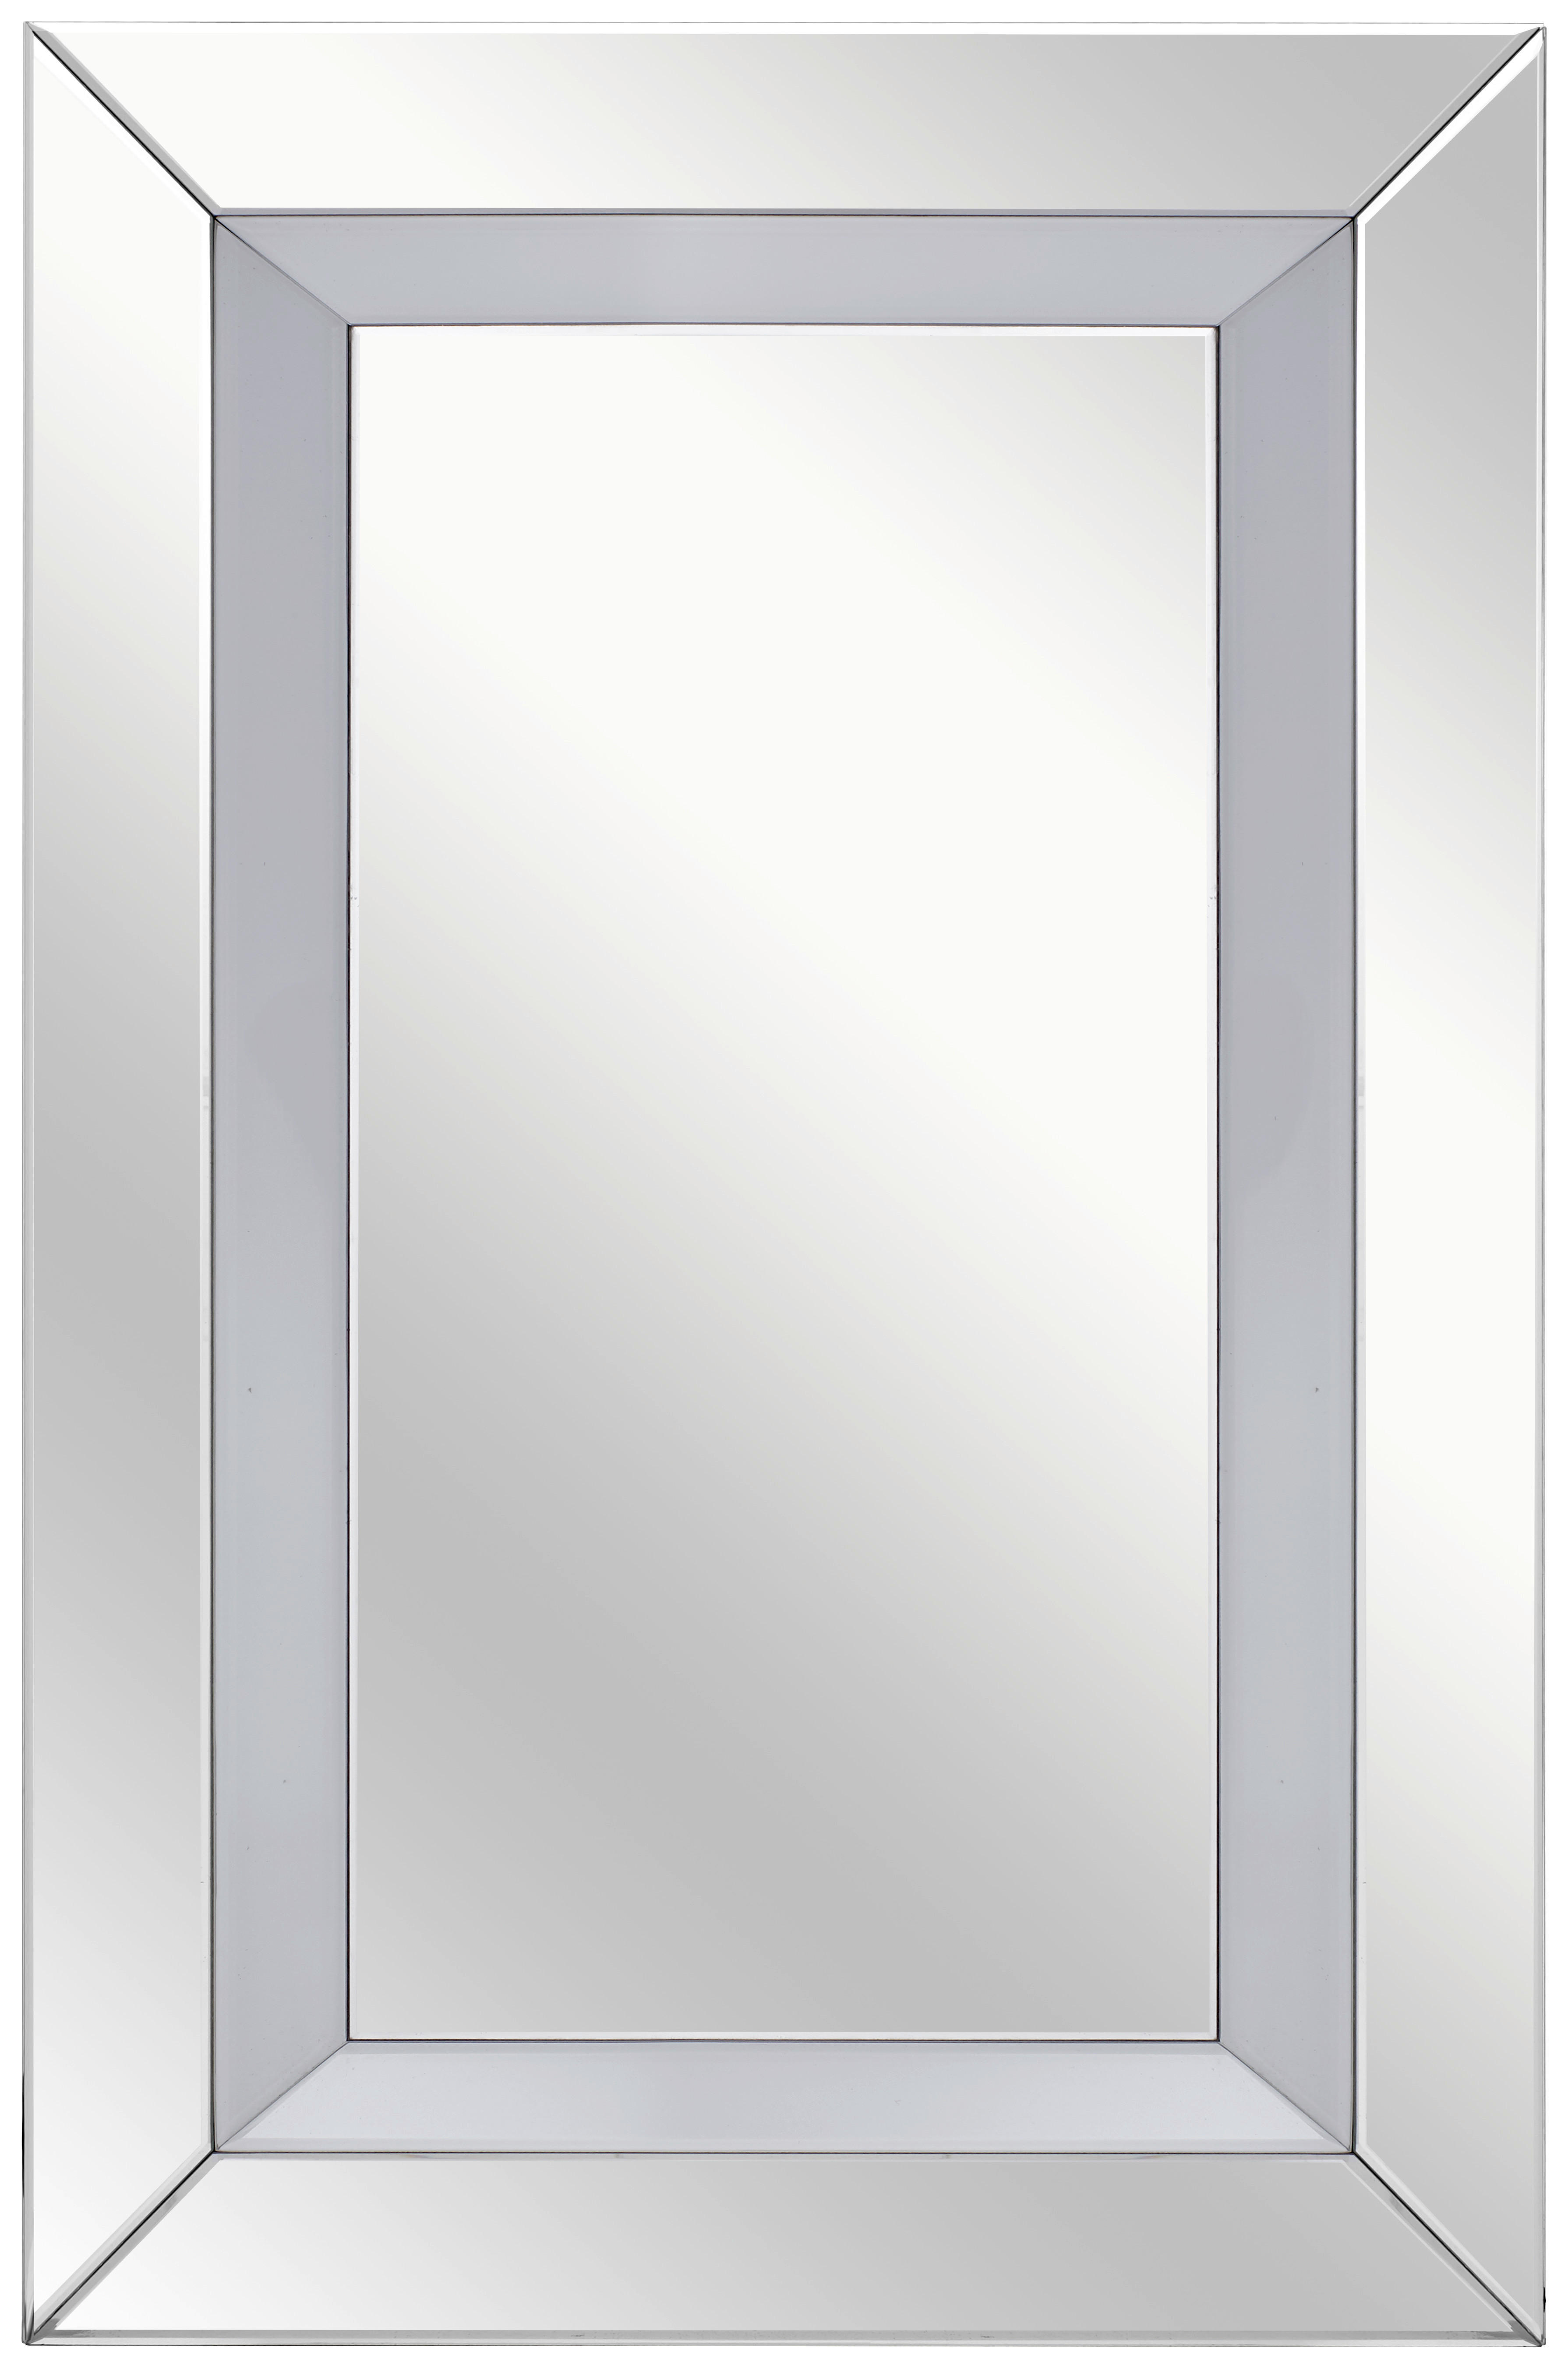 STENSKO OGLEDALO, 80/120/4,8 cm steklo, leseni material  - srebrne barve, Design, steklo/leseni material (80/120/4,8cm) - Ti'me